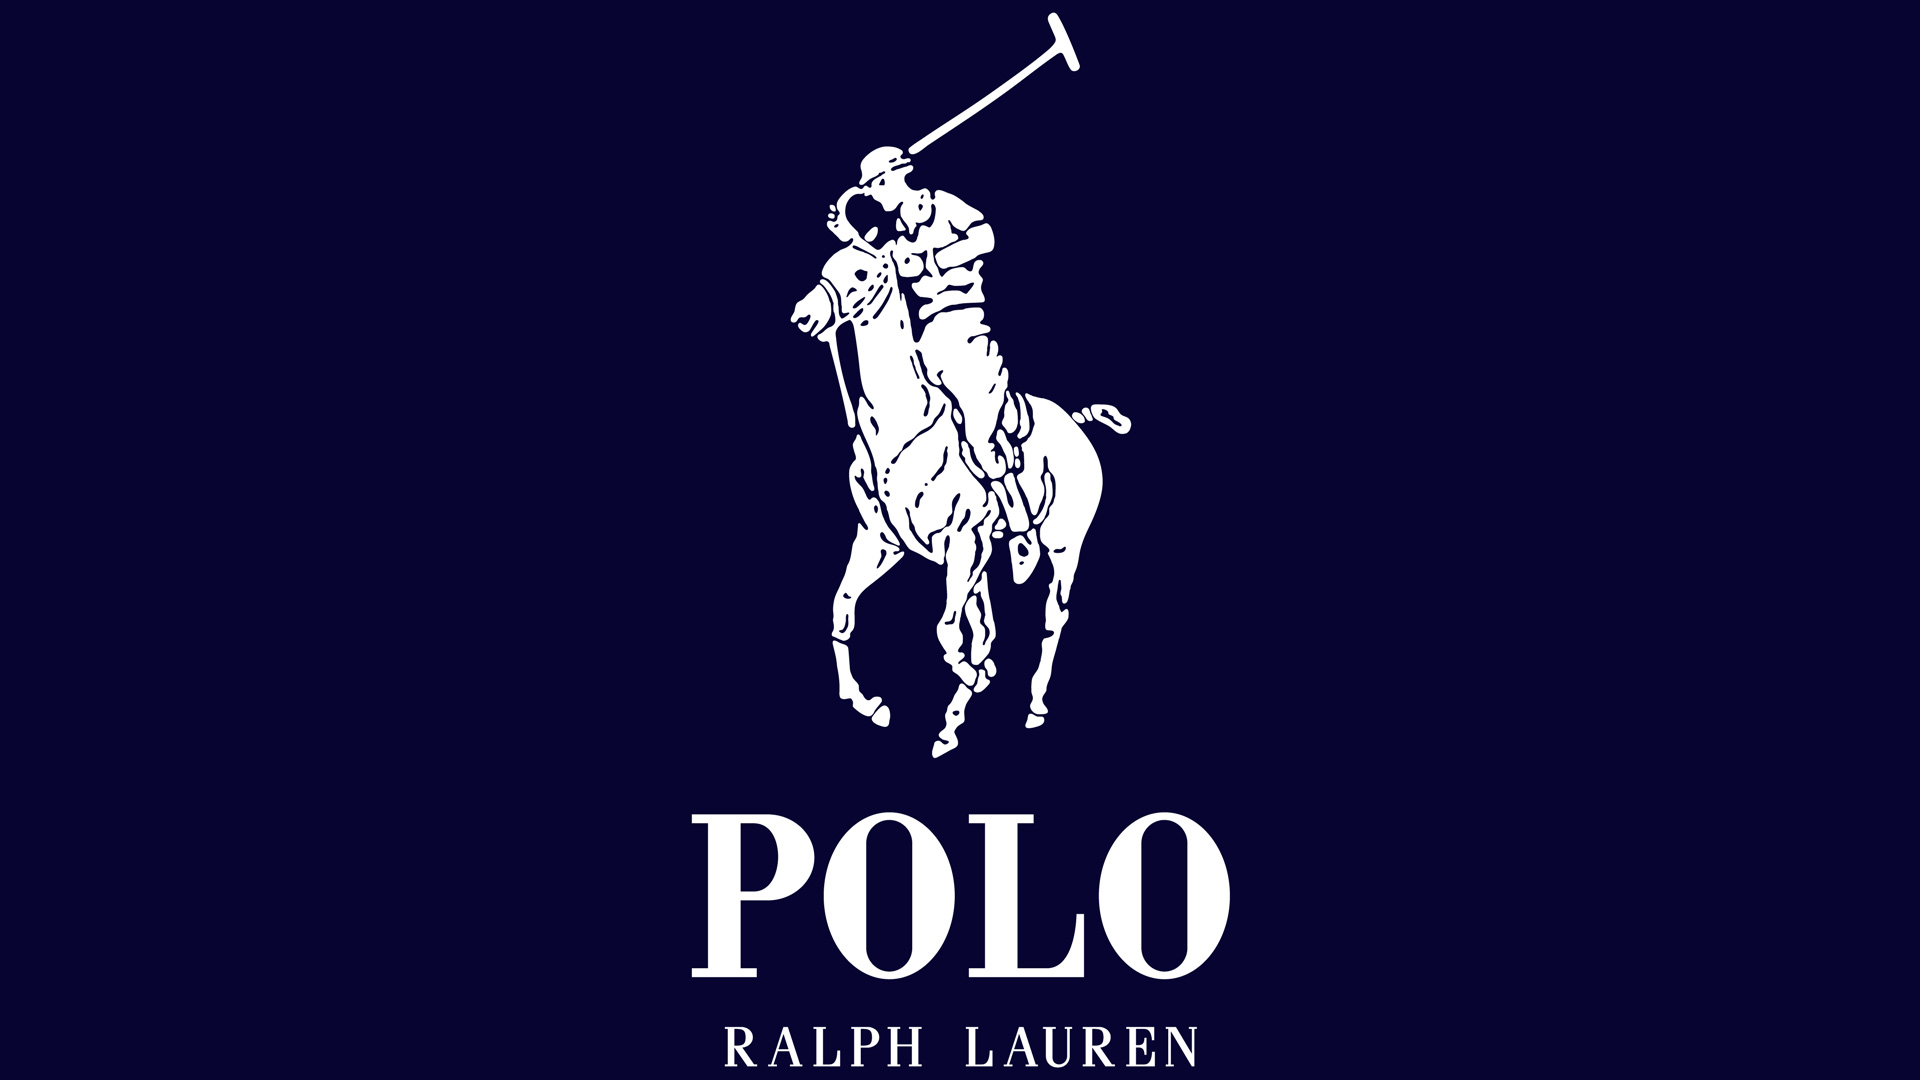 1920x1080 Ralph Lauren Polo Emblem Hotsell, 50% OFF